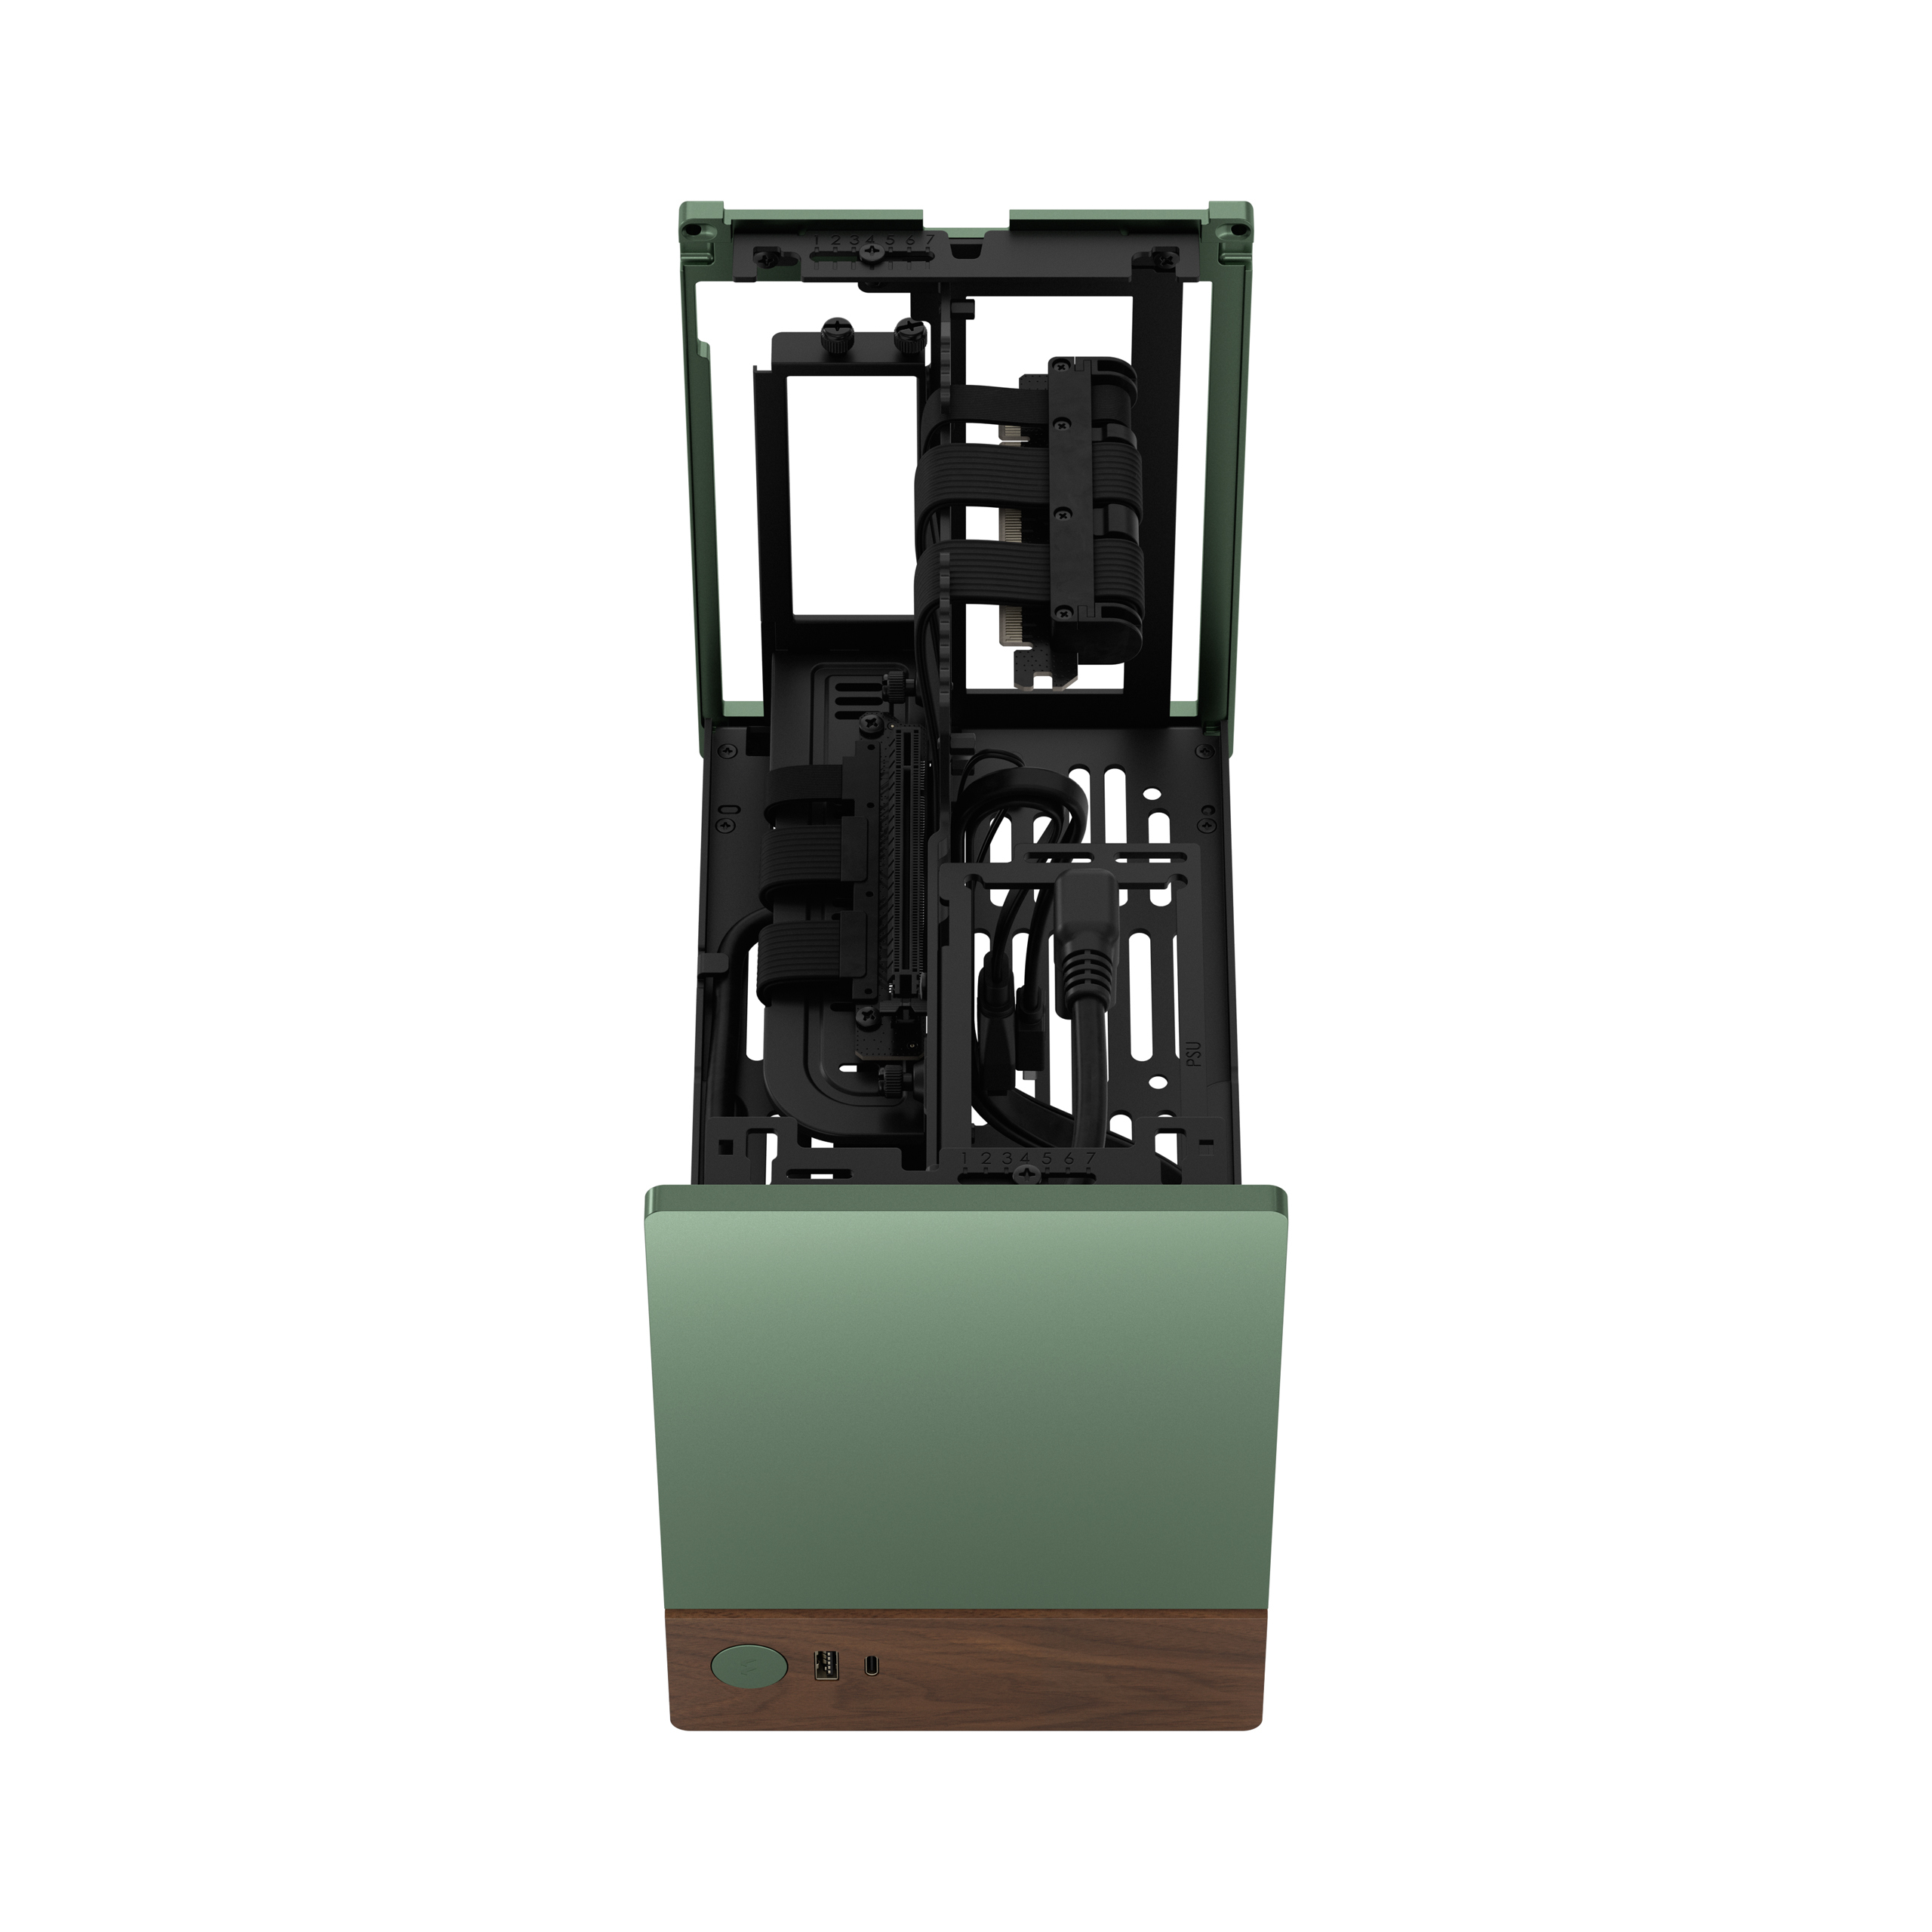 Fractal Design - Caixa Mini-ITX Fractal Design Terra Jade